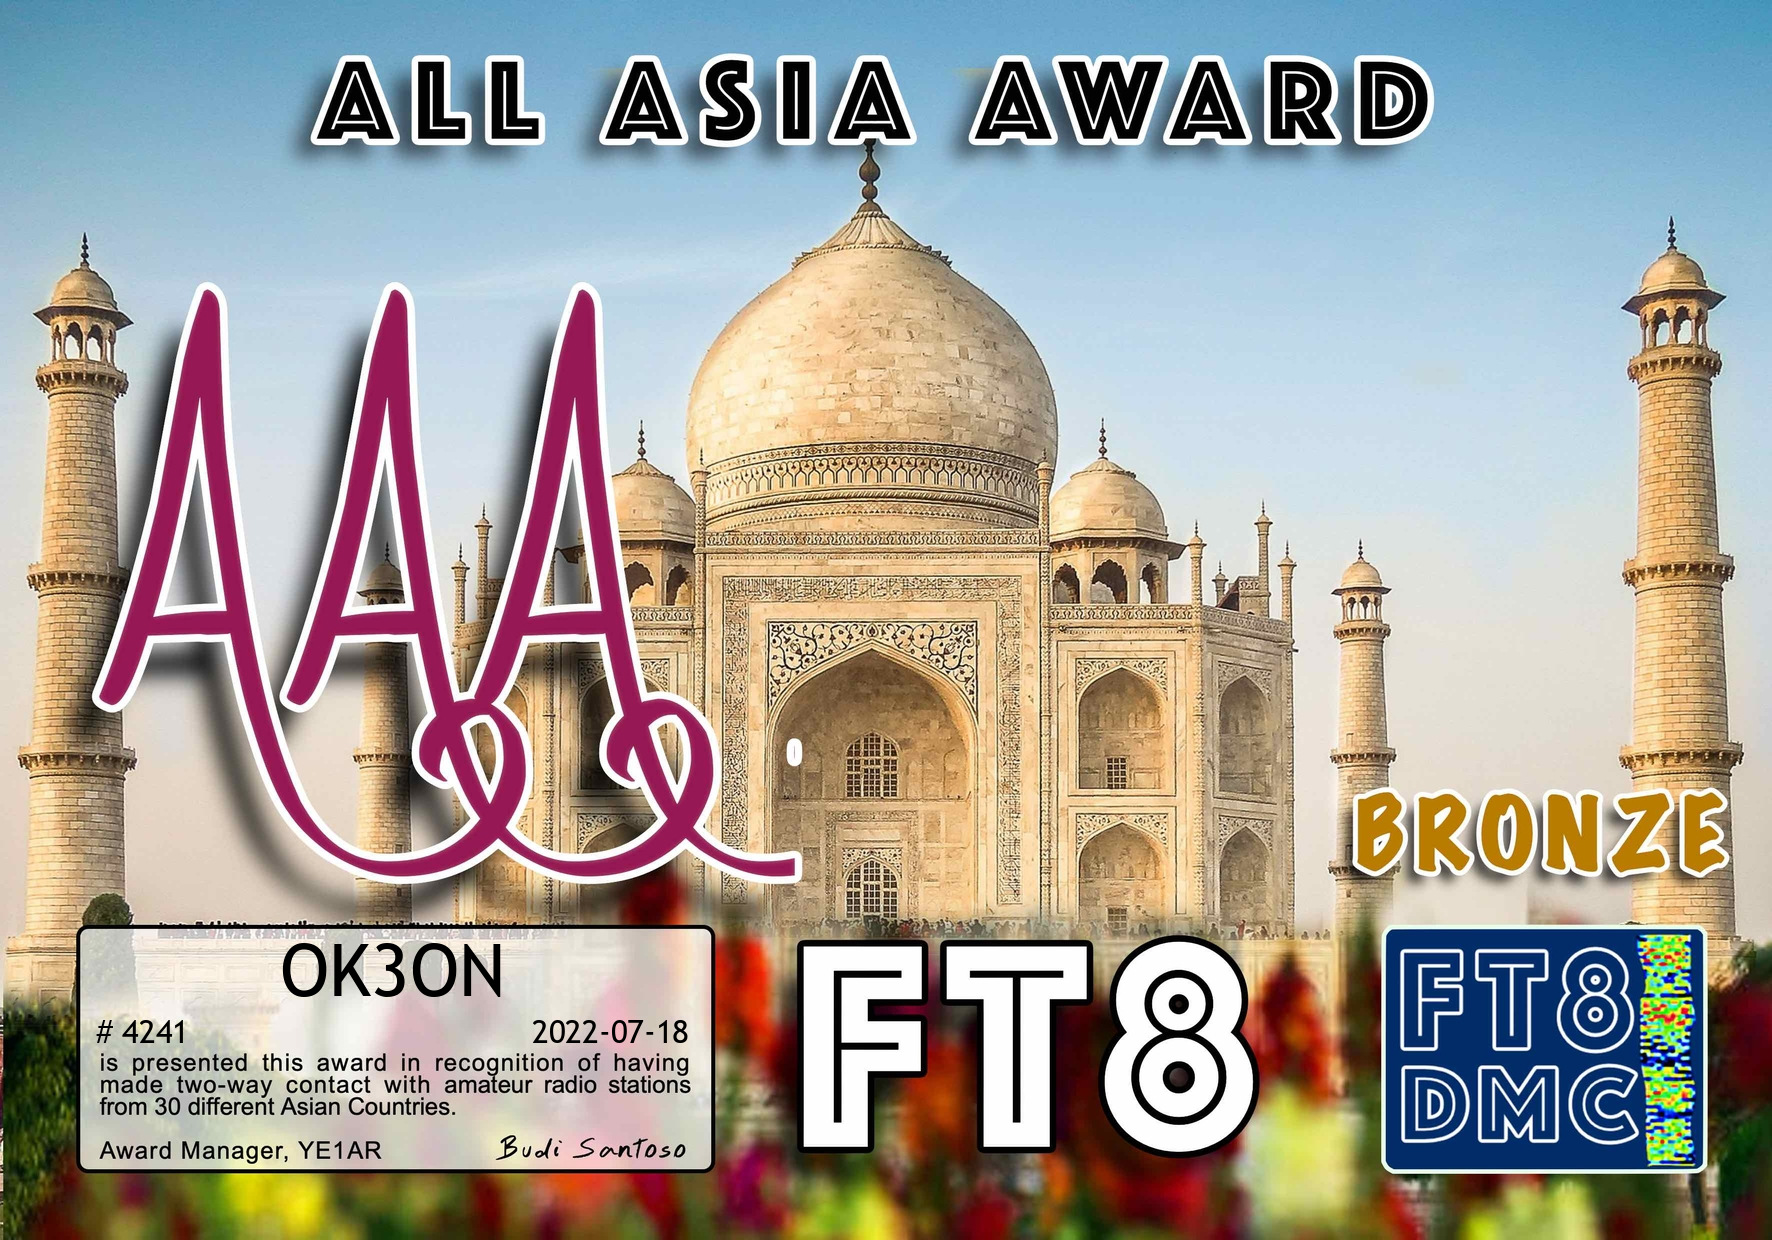 awards/OK3ON-AAA-BRONZE_FT8DMC.jpg